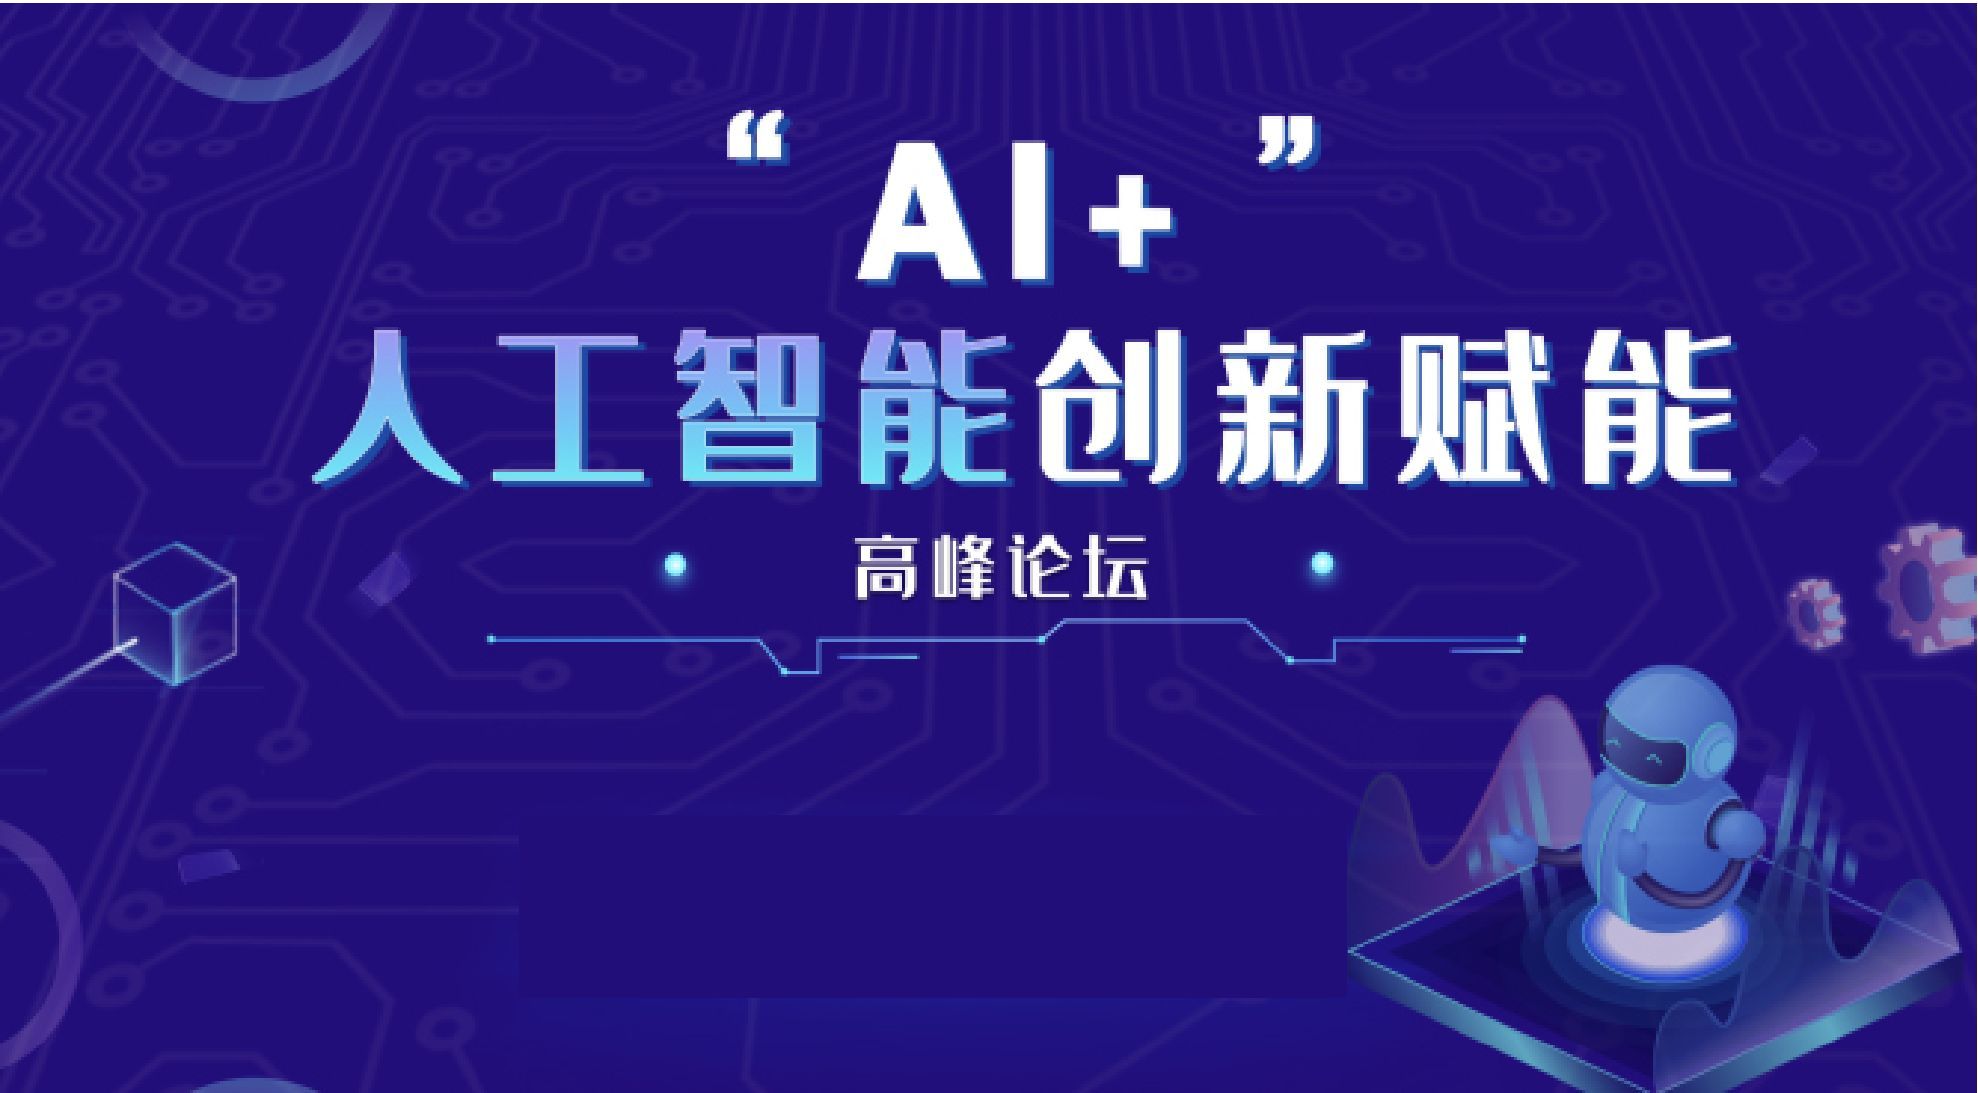 “AI+”人工智能创新赋能高峰论坛